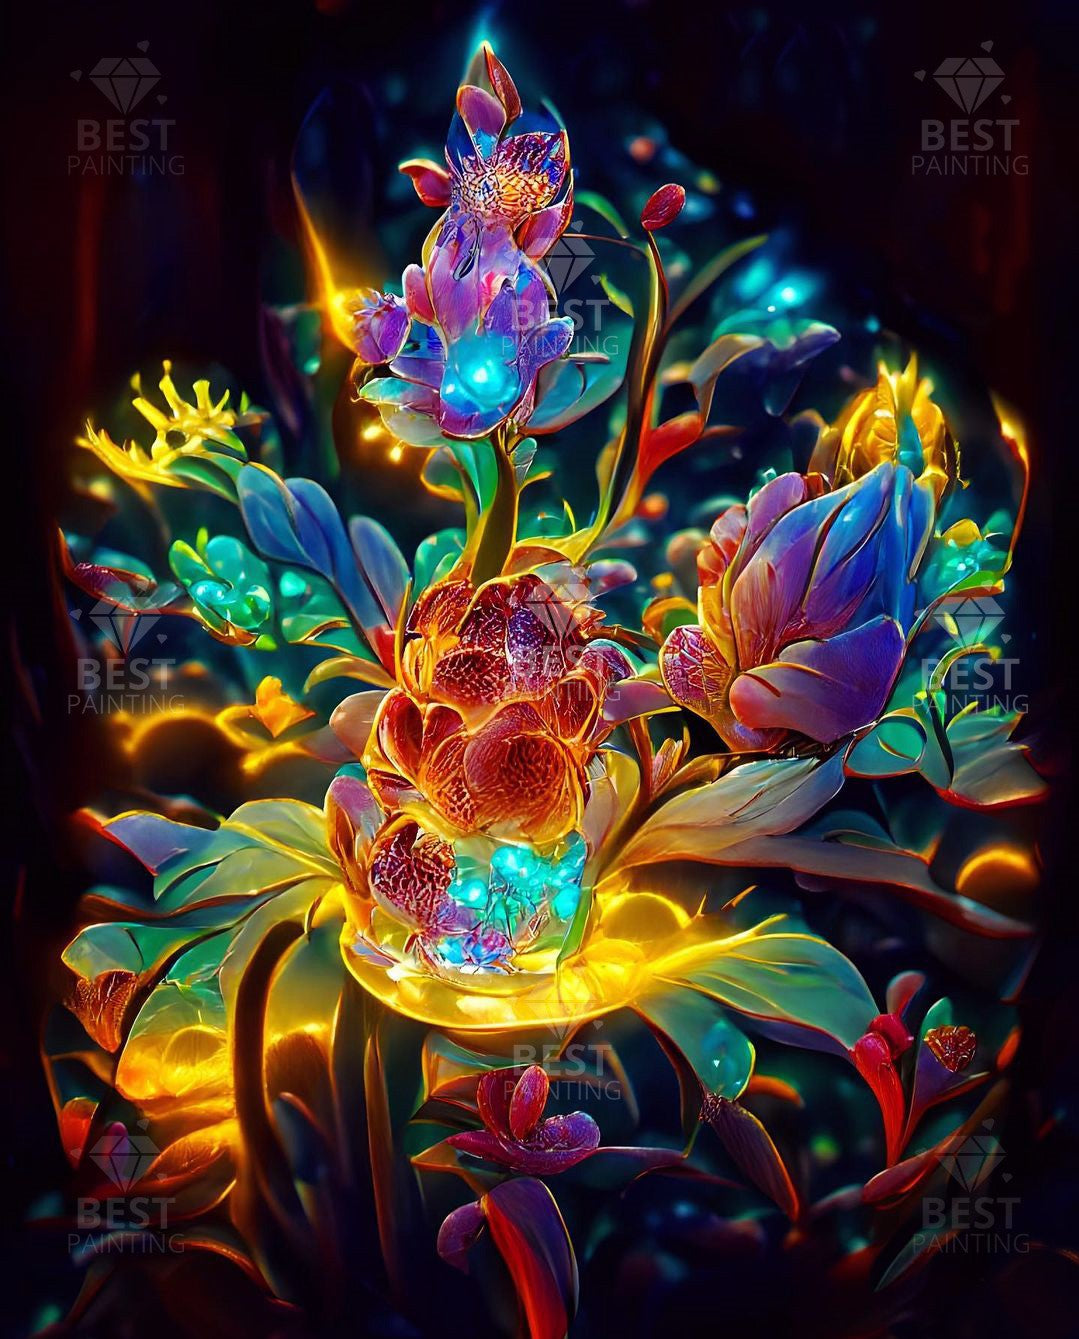 Flower Of Life - Best Diamond Art